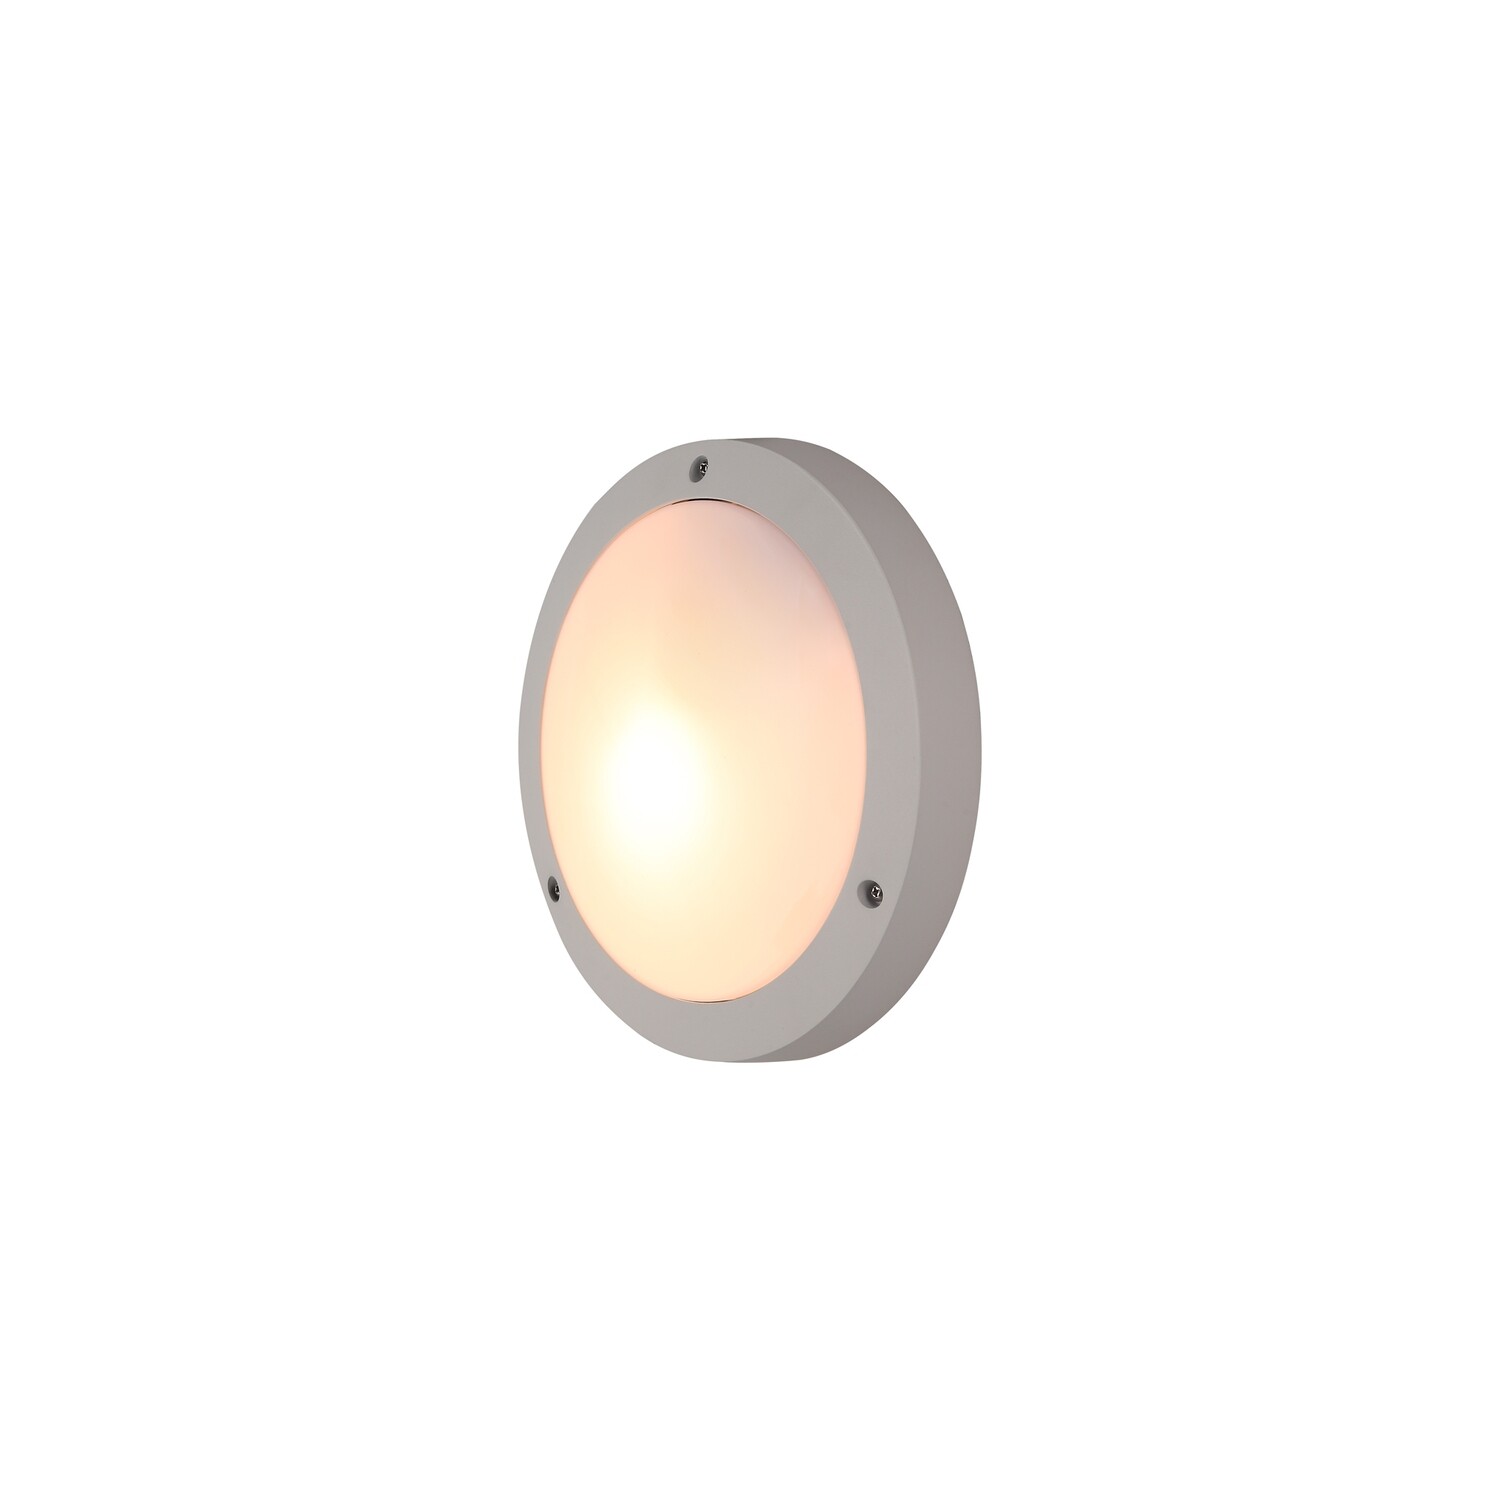 Daru Plain Outdoor Bulkhead Ceiling/Wall Lamp, 1 x E27, Sand White, IP54